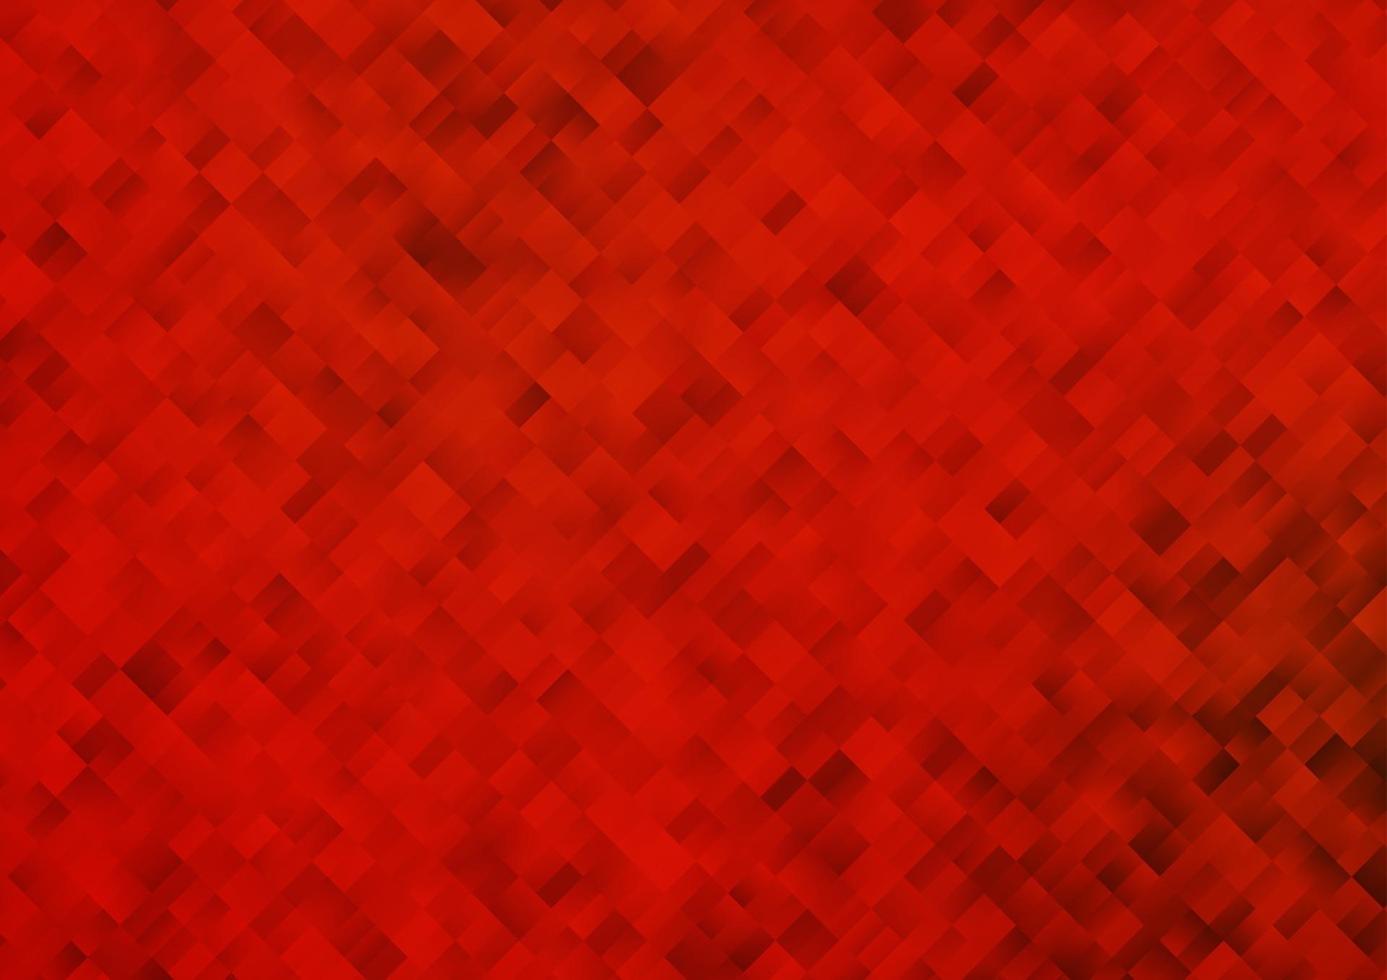 texture de vecteur rouge clair dans un style rectangulaire.